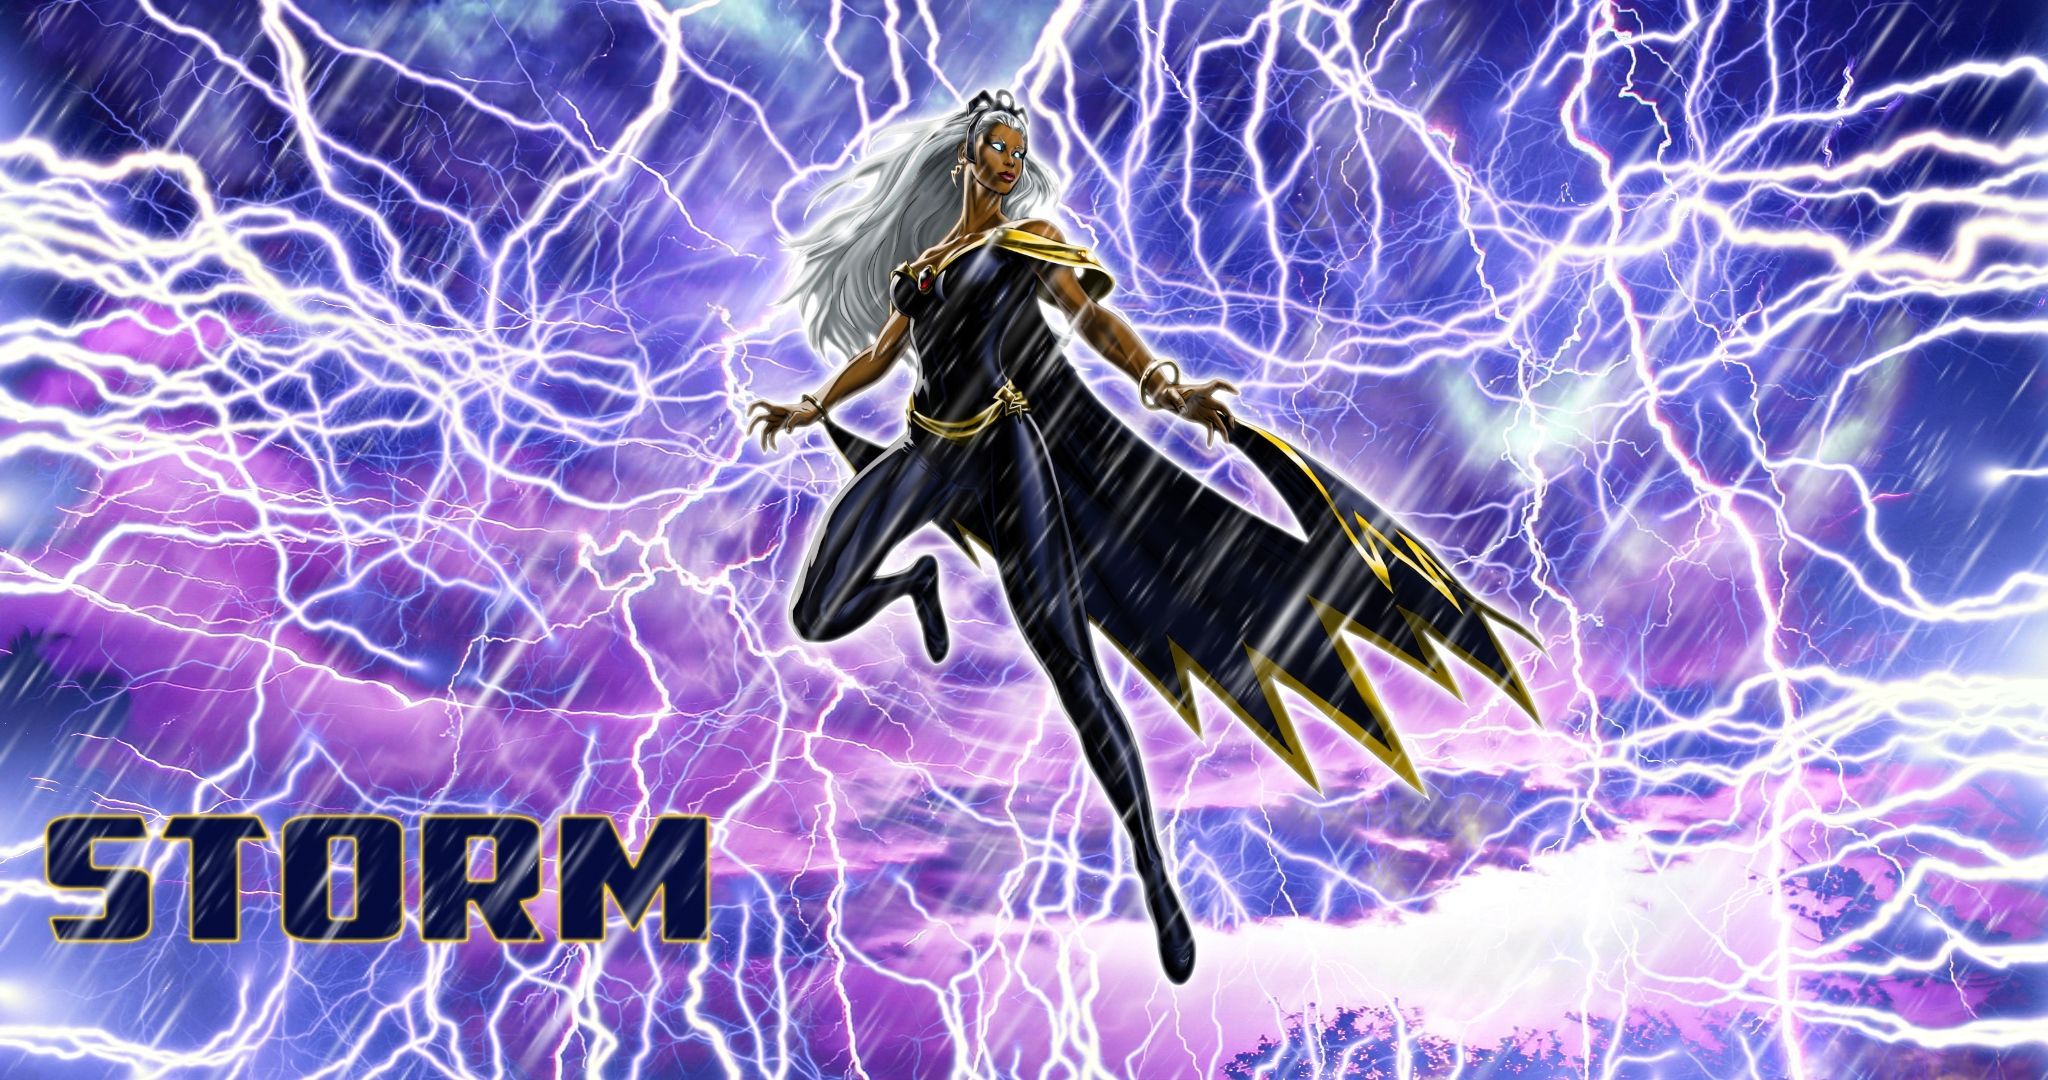 Download Storm X Men Comics Background Free. Wallpaper, Background, Image, Art Photo. Storm wallpaper, Storm marvel, X men